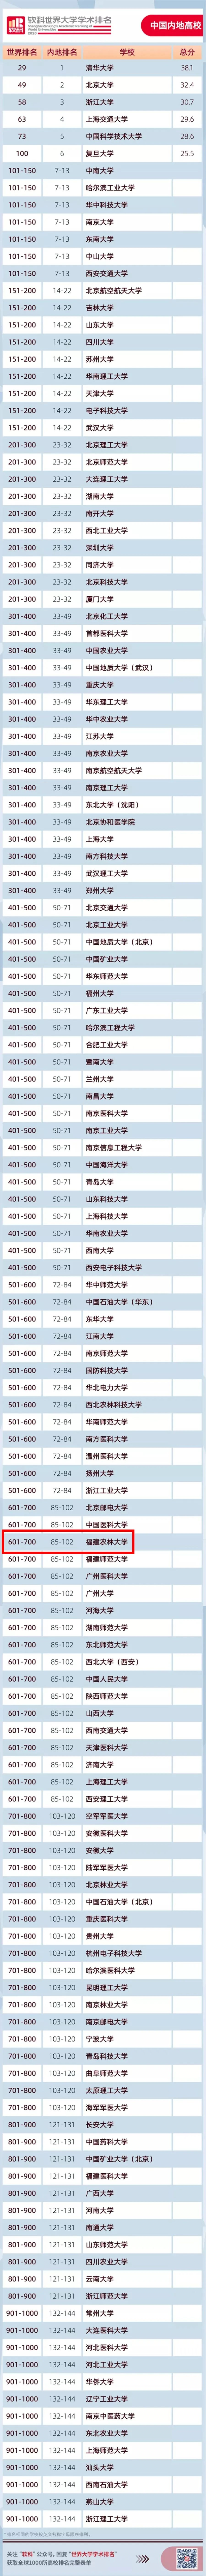 2020年医学软科排名_软科2020年中国医学类大学40强:协和医学院夺冠,中医